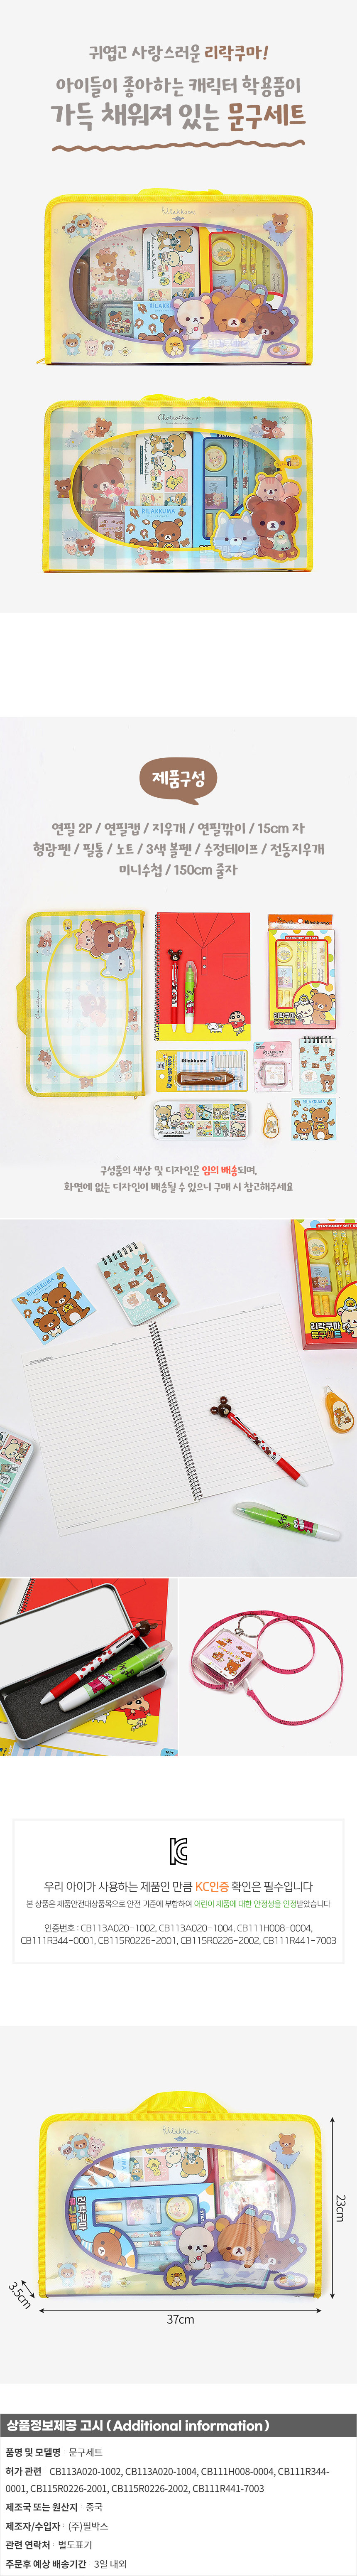 리락쿠마 왕대박 문구세트 캐릭터 어린이날선물